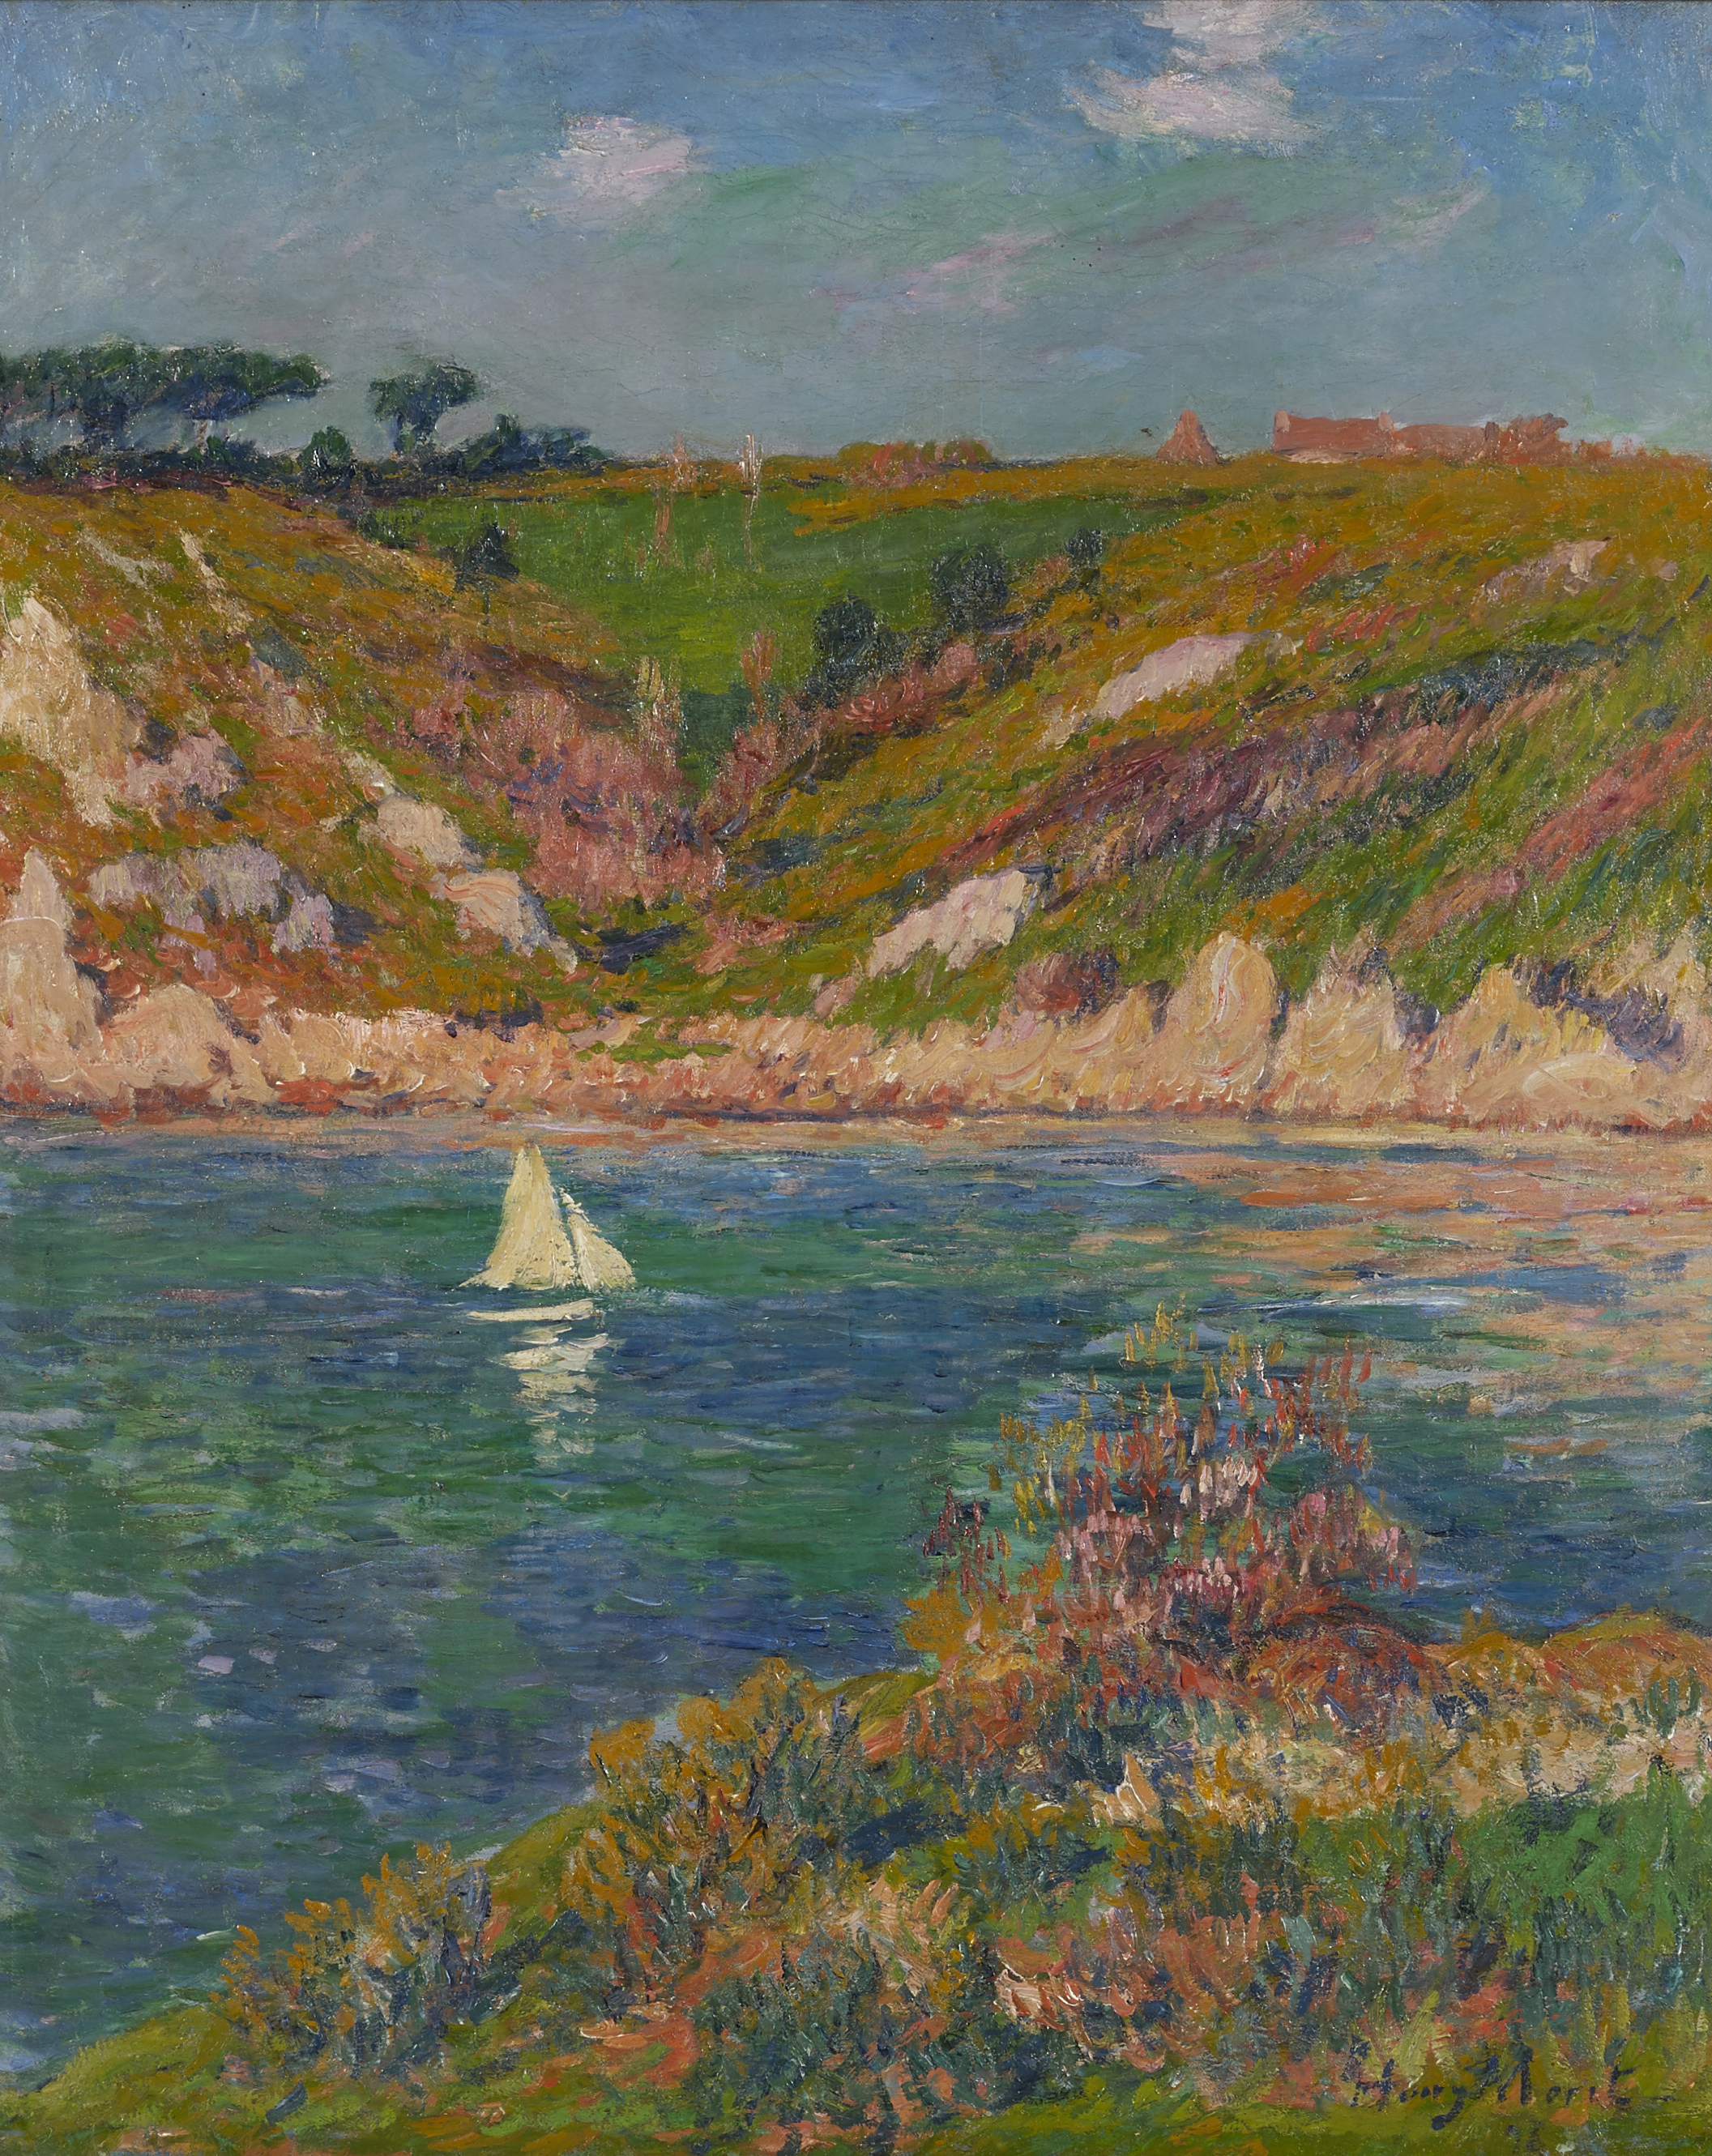 Henry MORET, Voilier en Bretagne, 1898, huile sur toile, collection musée des Beaux-Arts de Brest